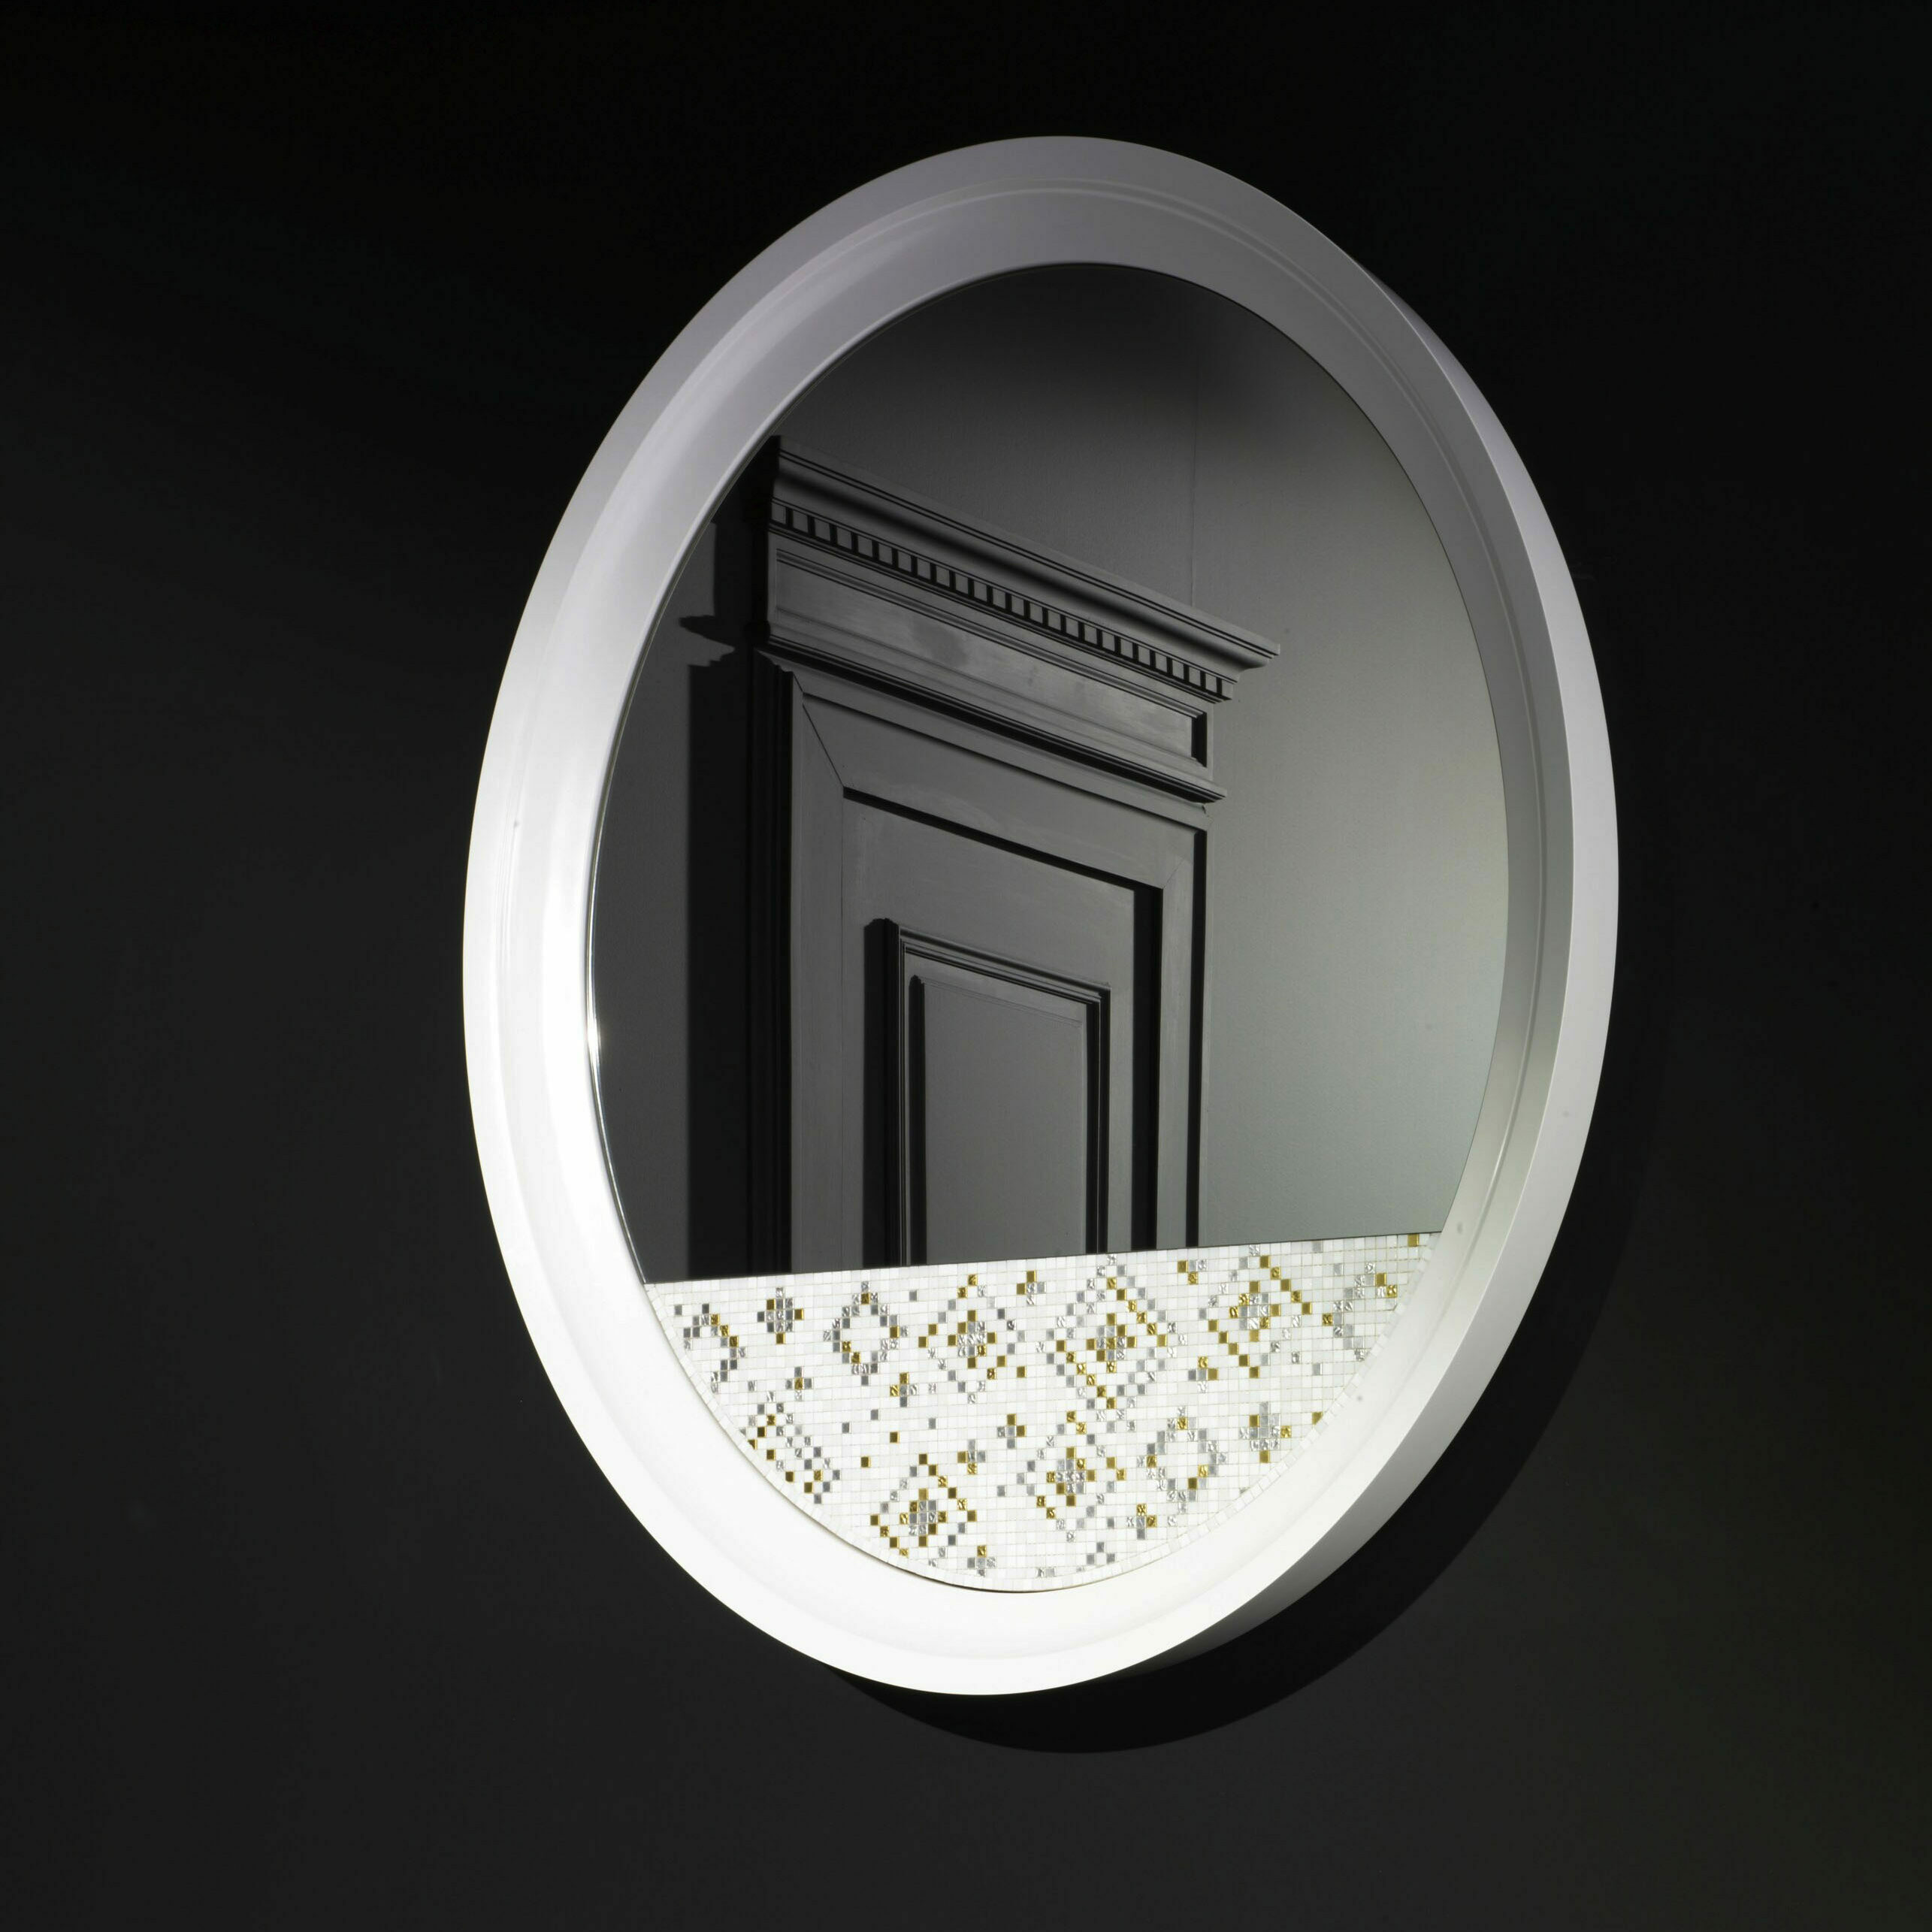 bisazza home jaime rayon kollektion vase tisch spiegel design inneneinrichtung einrichtungsidee